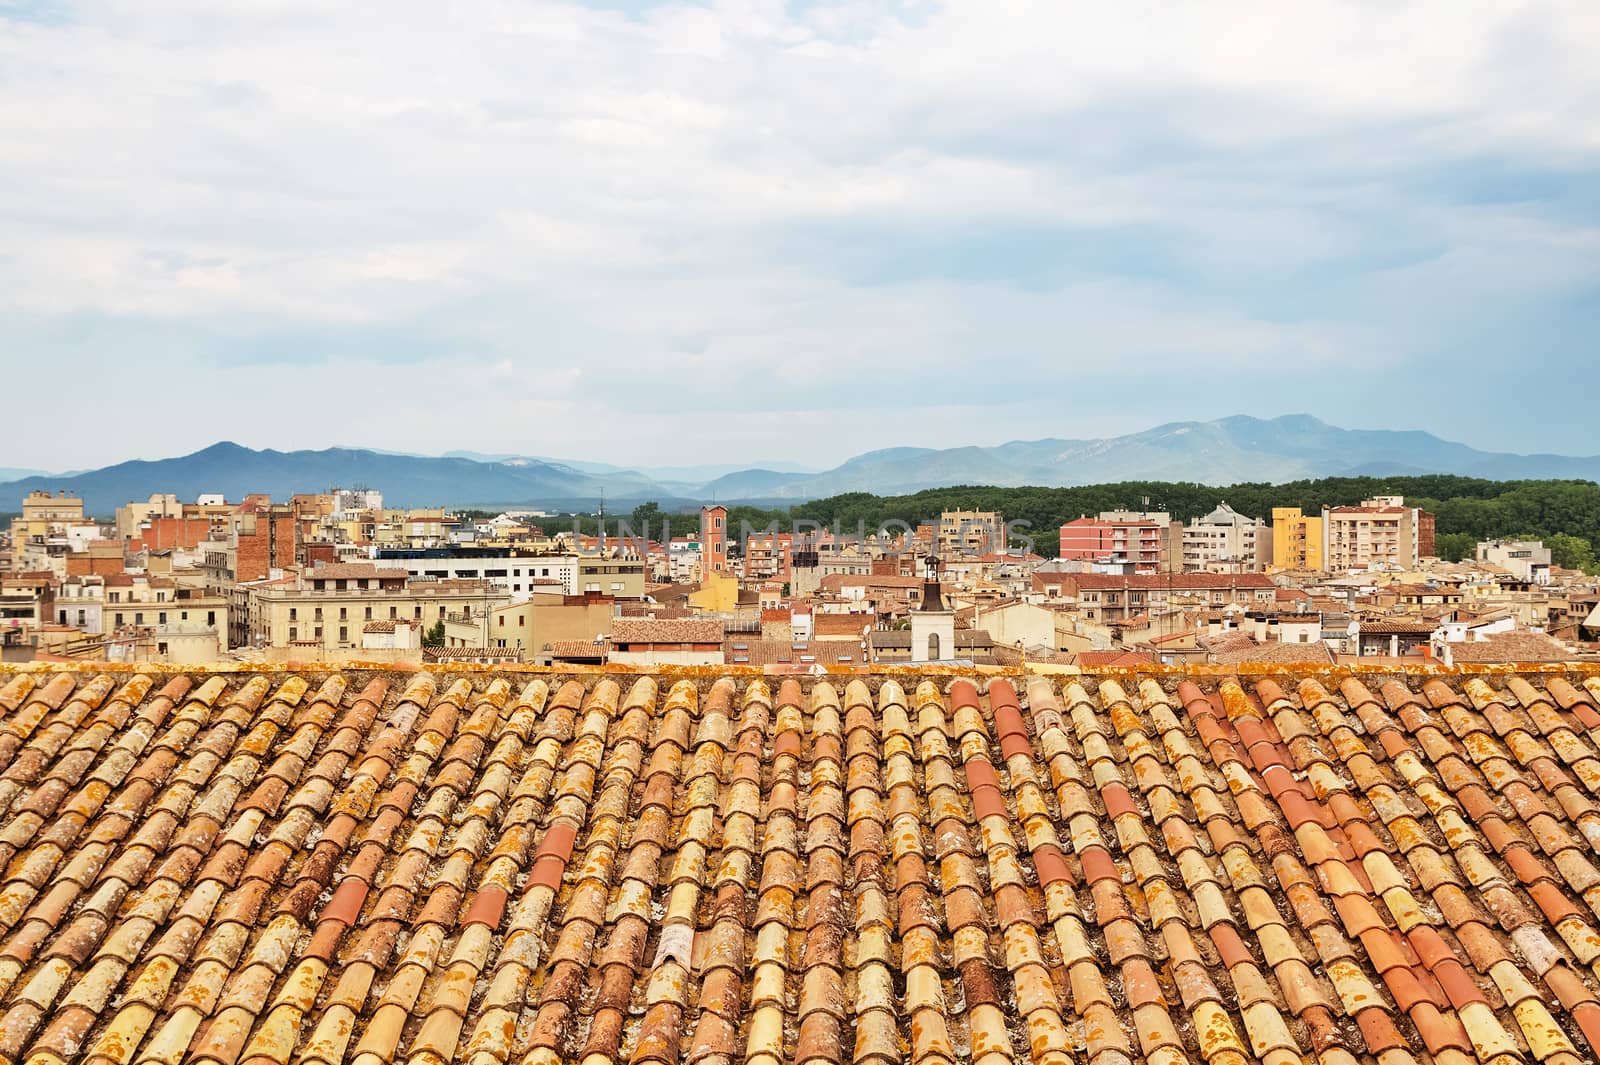 Tiled rooftops of Girona, Catalonia by anikasalsera